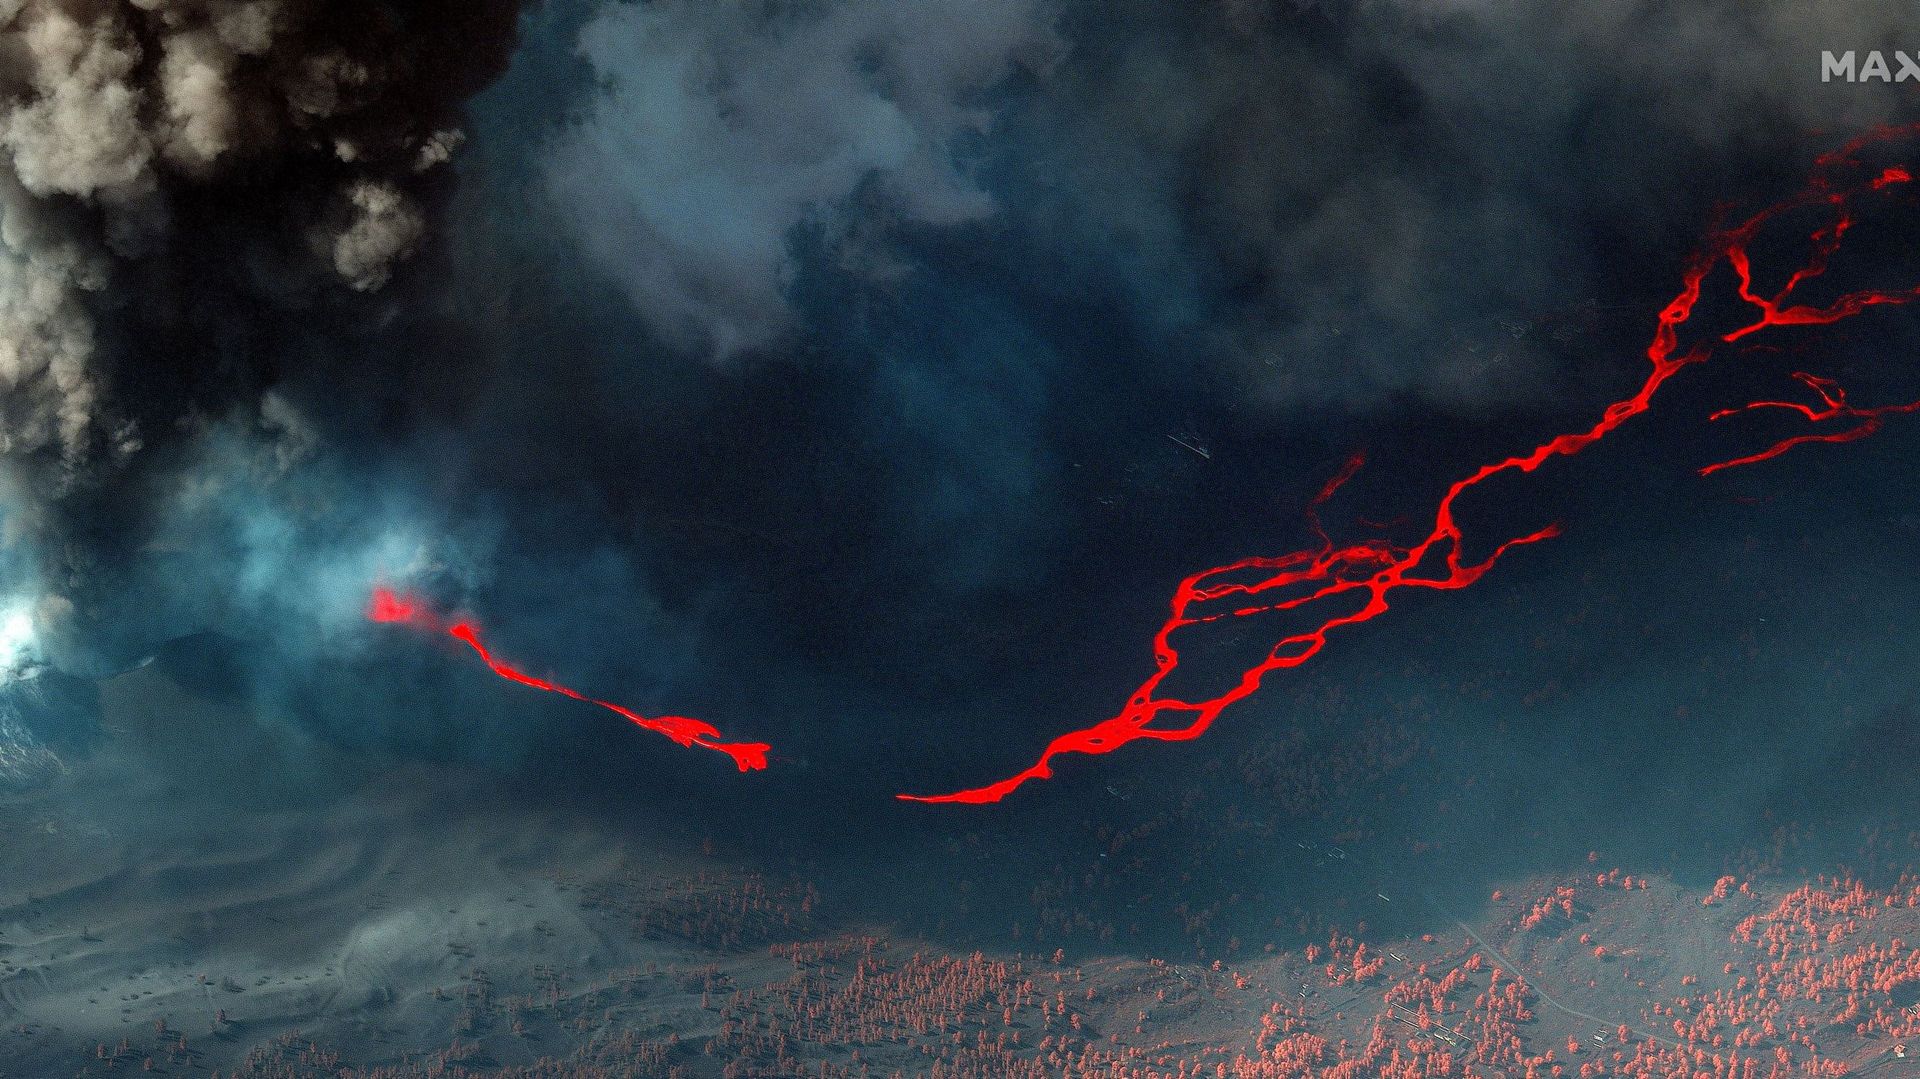 Eruption of La Cumbre Vieja volcano on La Palma in the Canary Islands